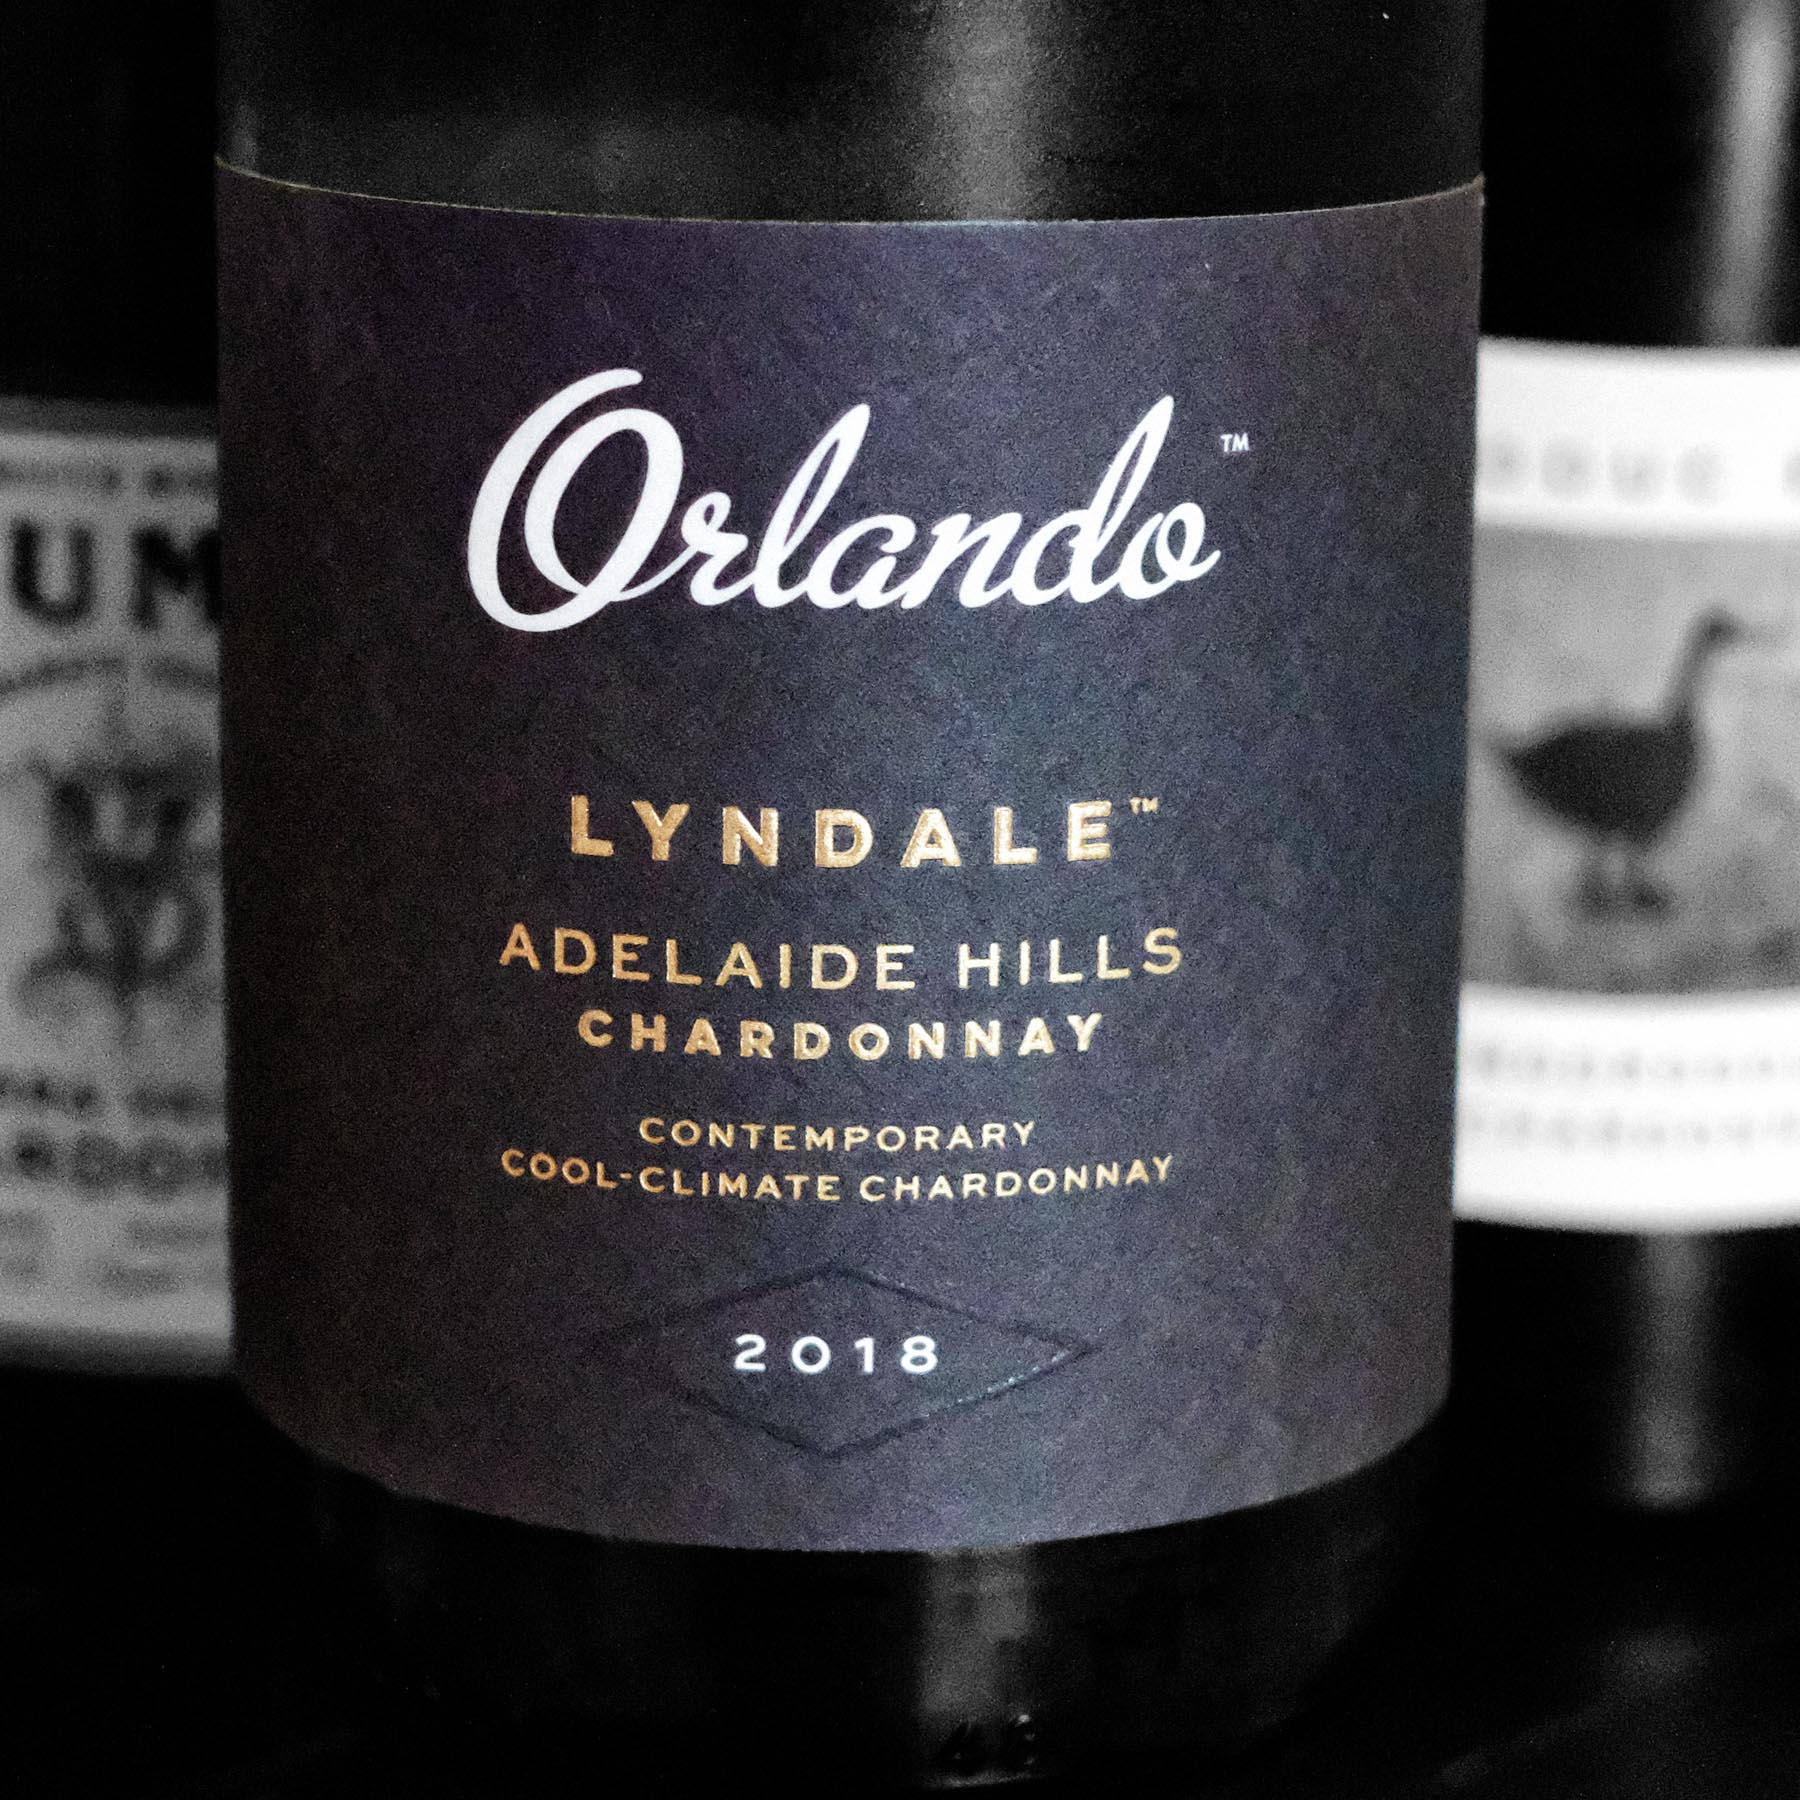 Orlando Lyndale Chardonnay 2018, Adelaide Hills